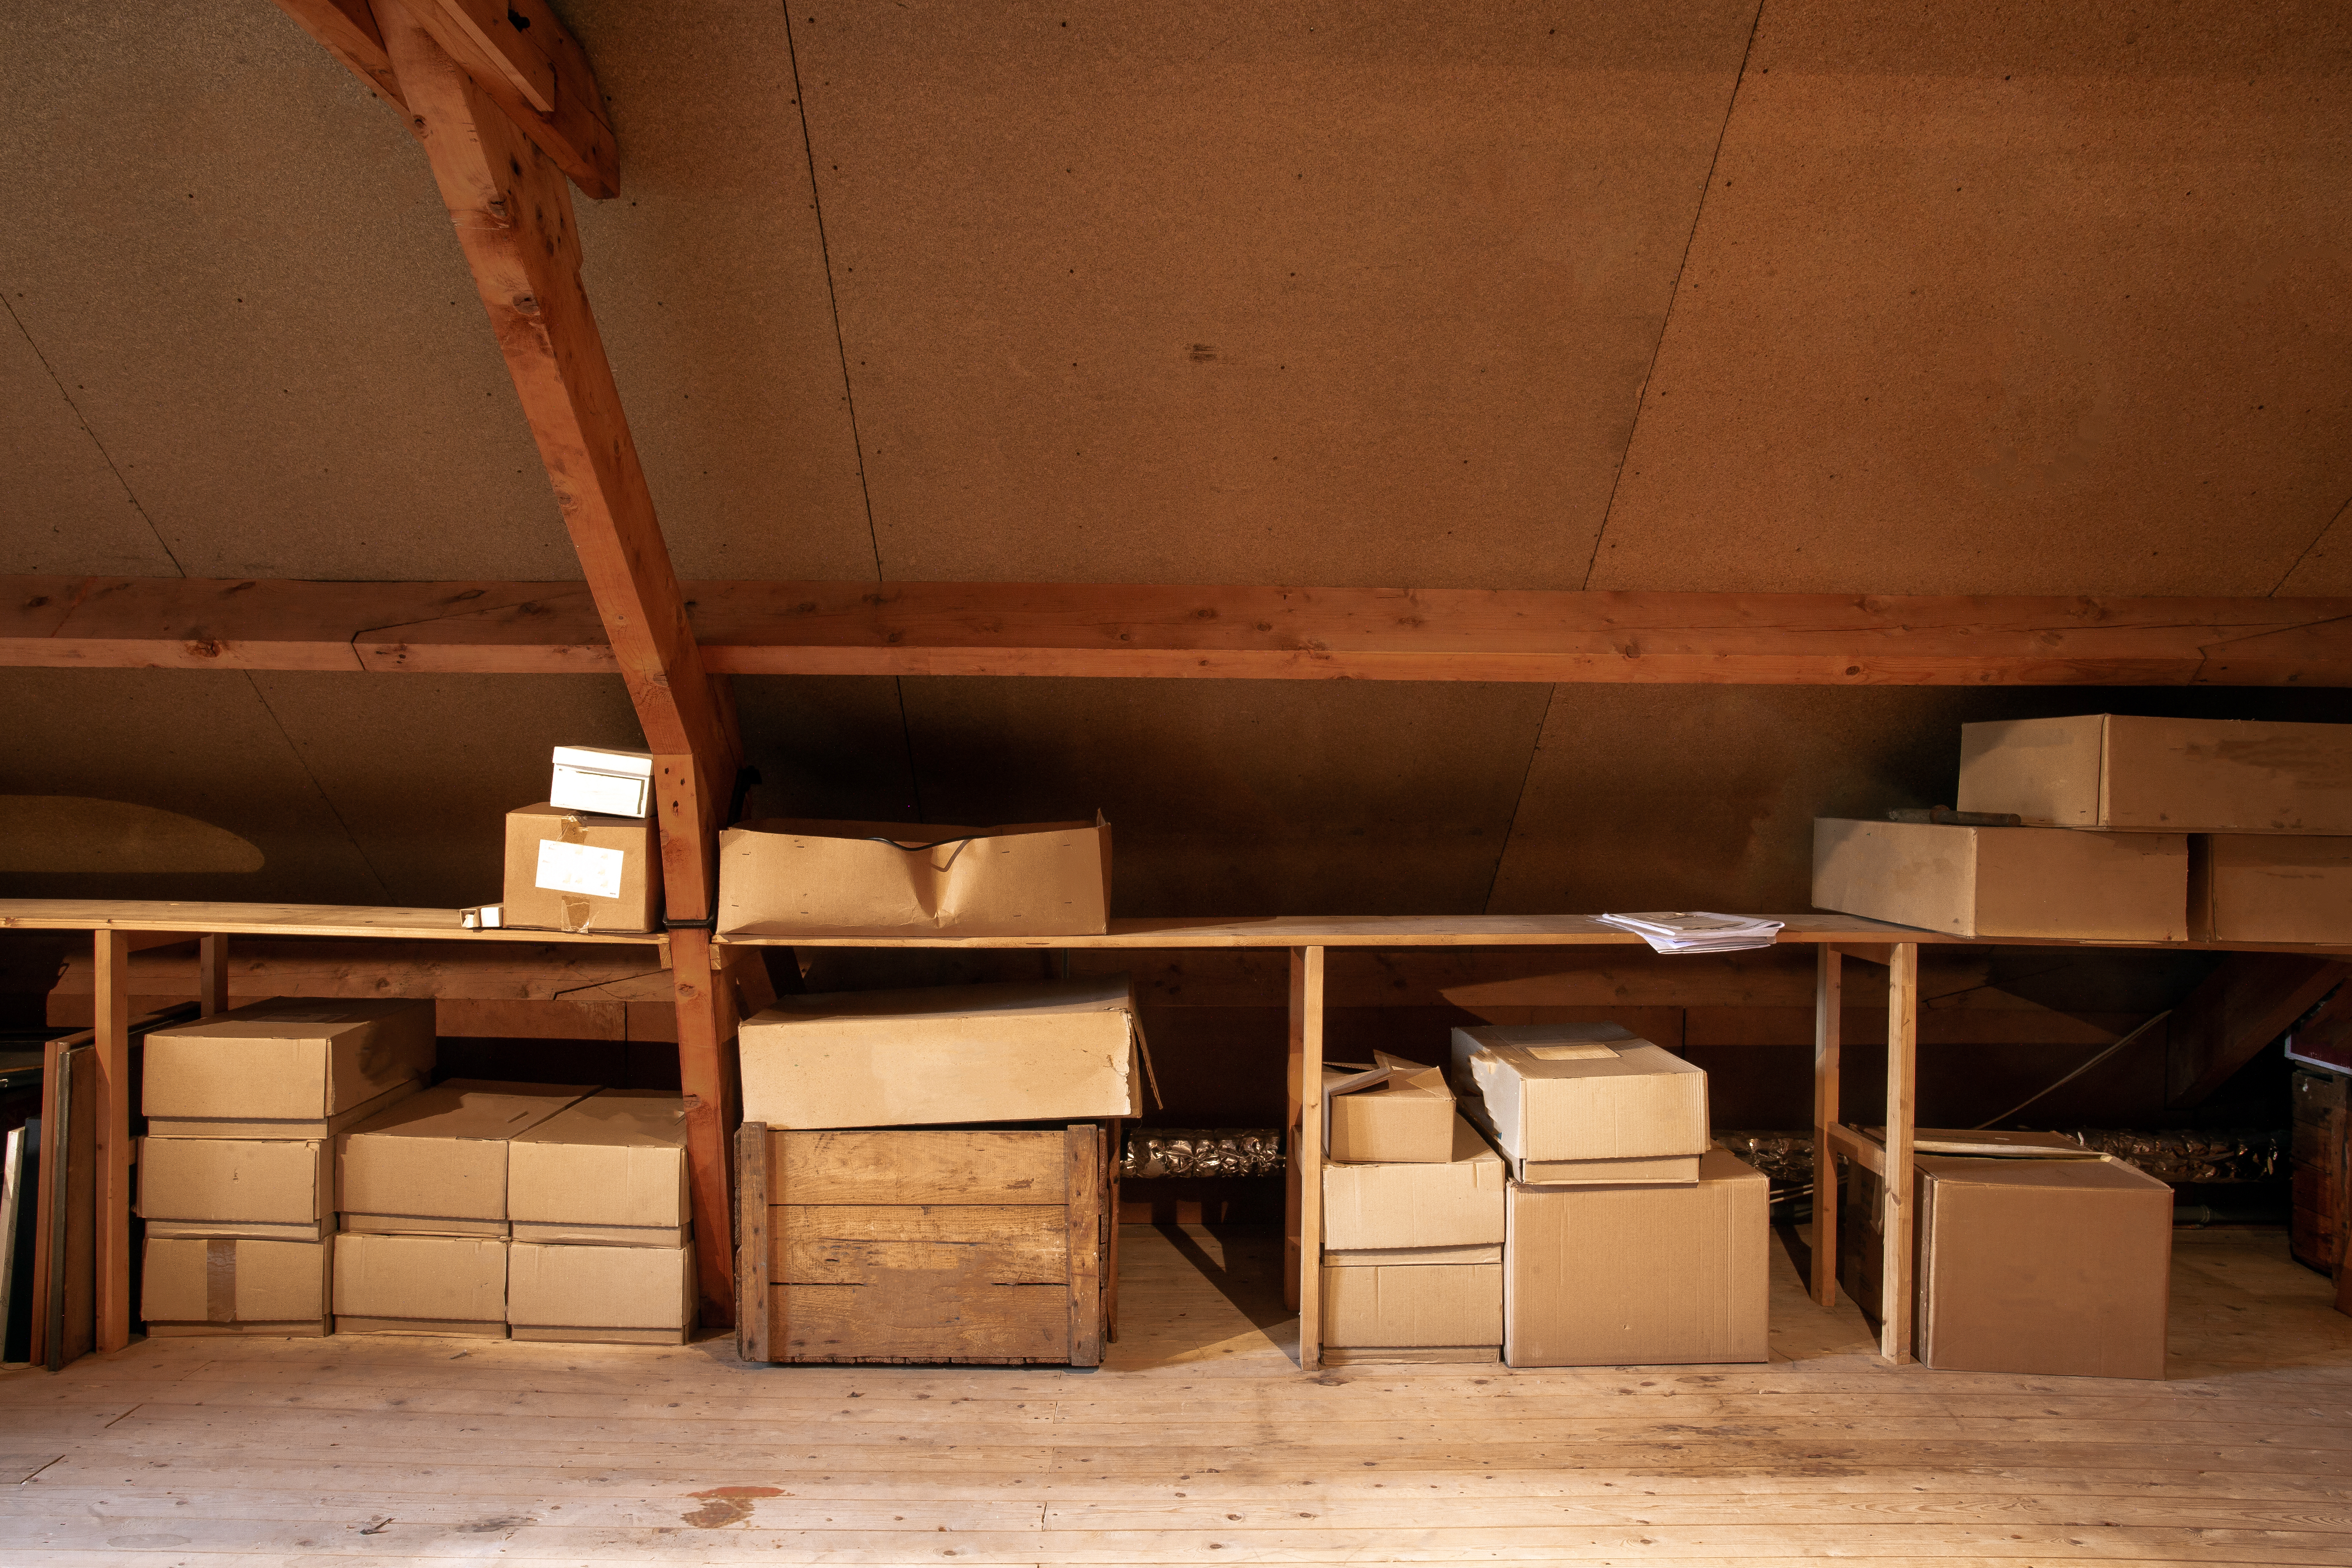 Ein alter hölzerner Dachboden mit alten Pappkartons zur Lagerung | Quelle: Shutterstock